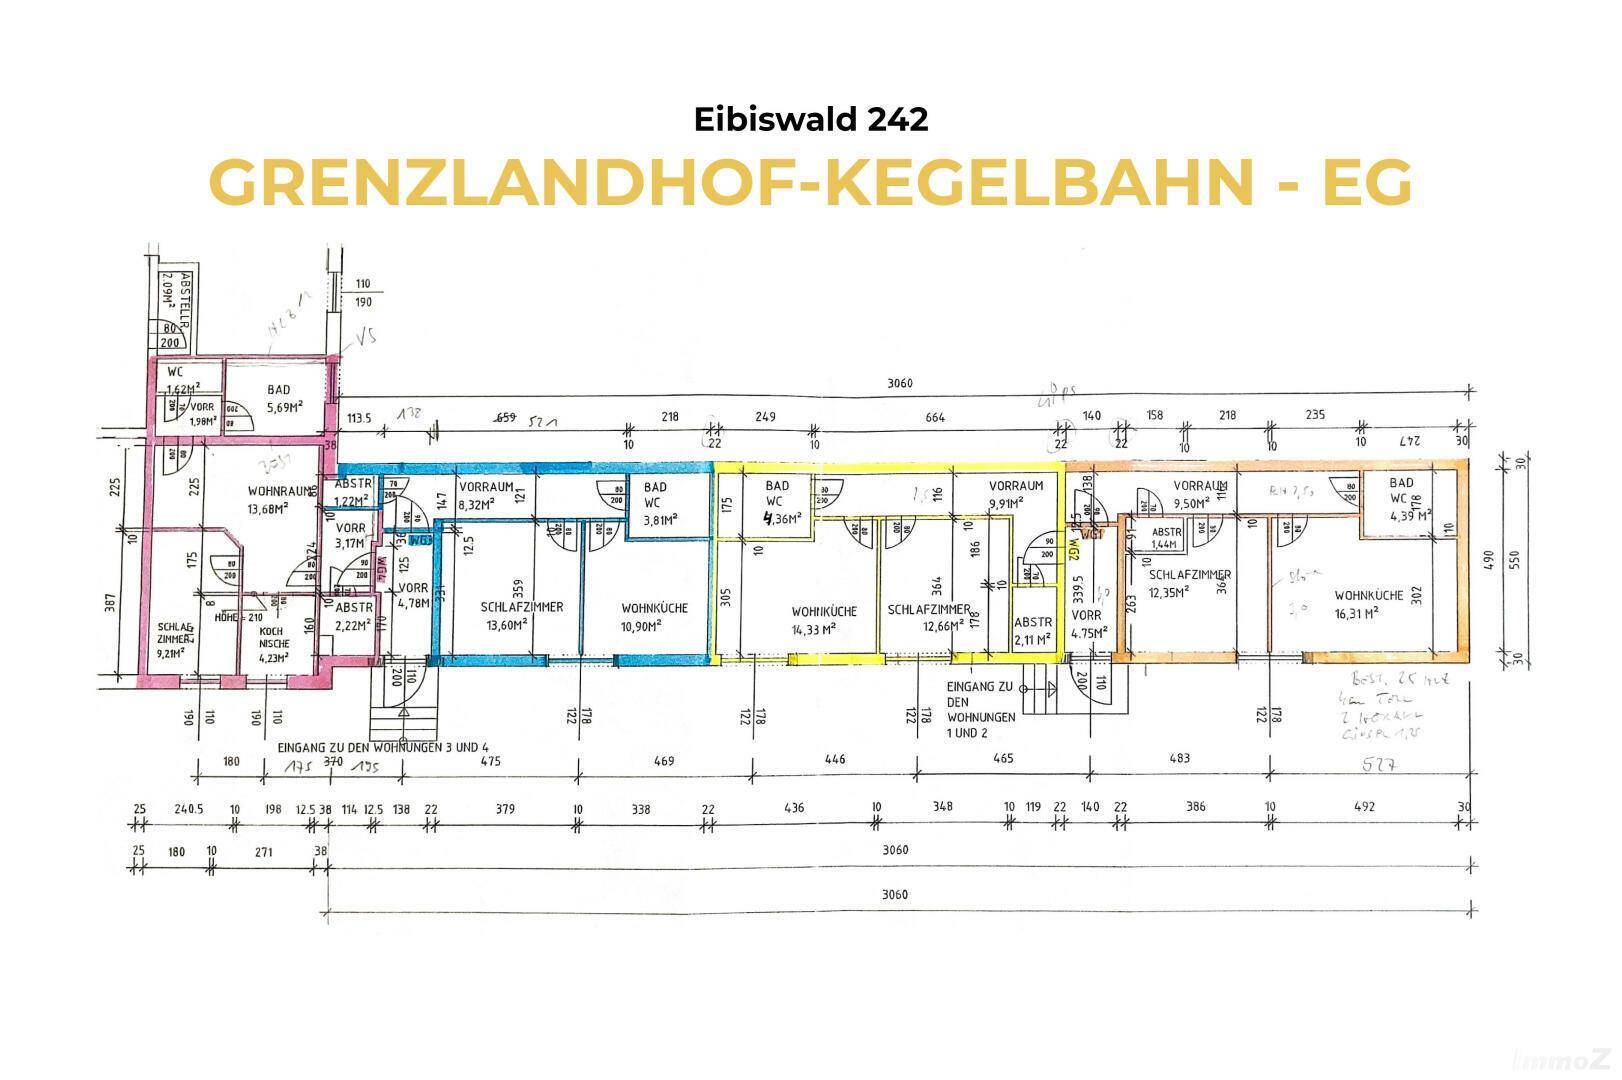 1 Grenzlandhof - Kegelbahn - EG